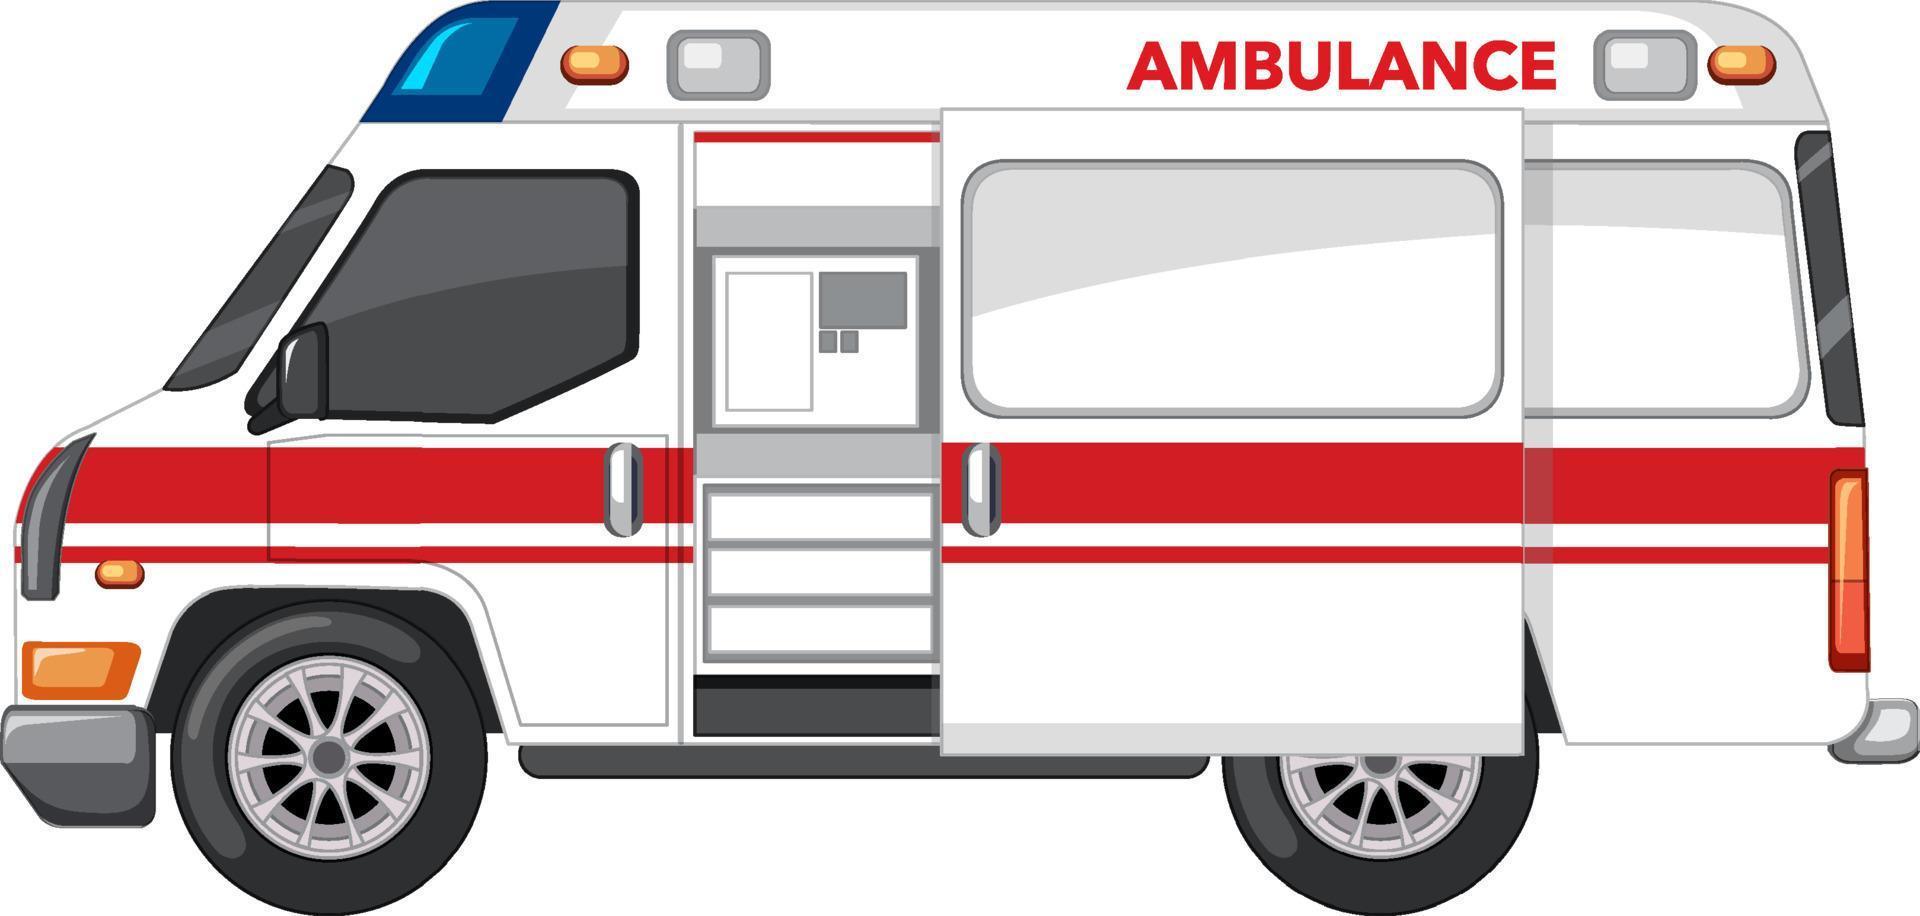 ambulância de emergência em fundo branco vetor